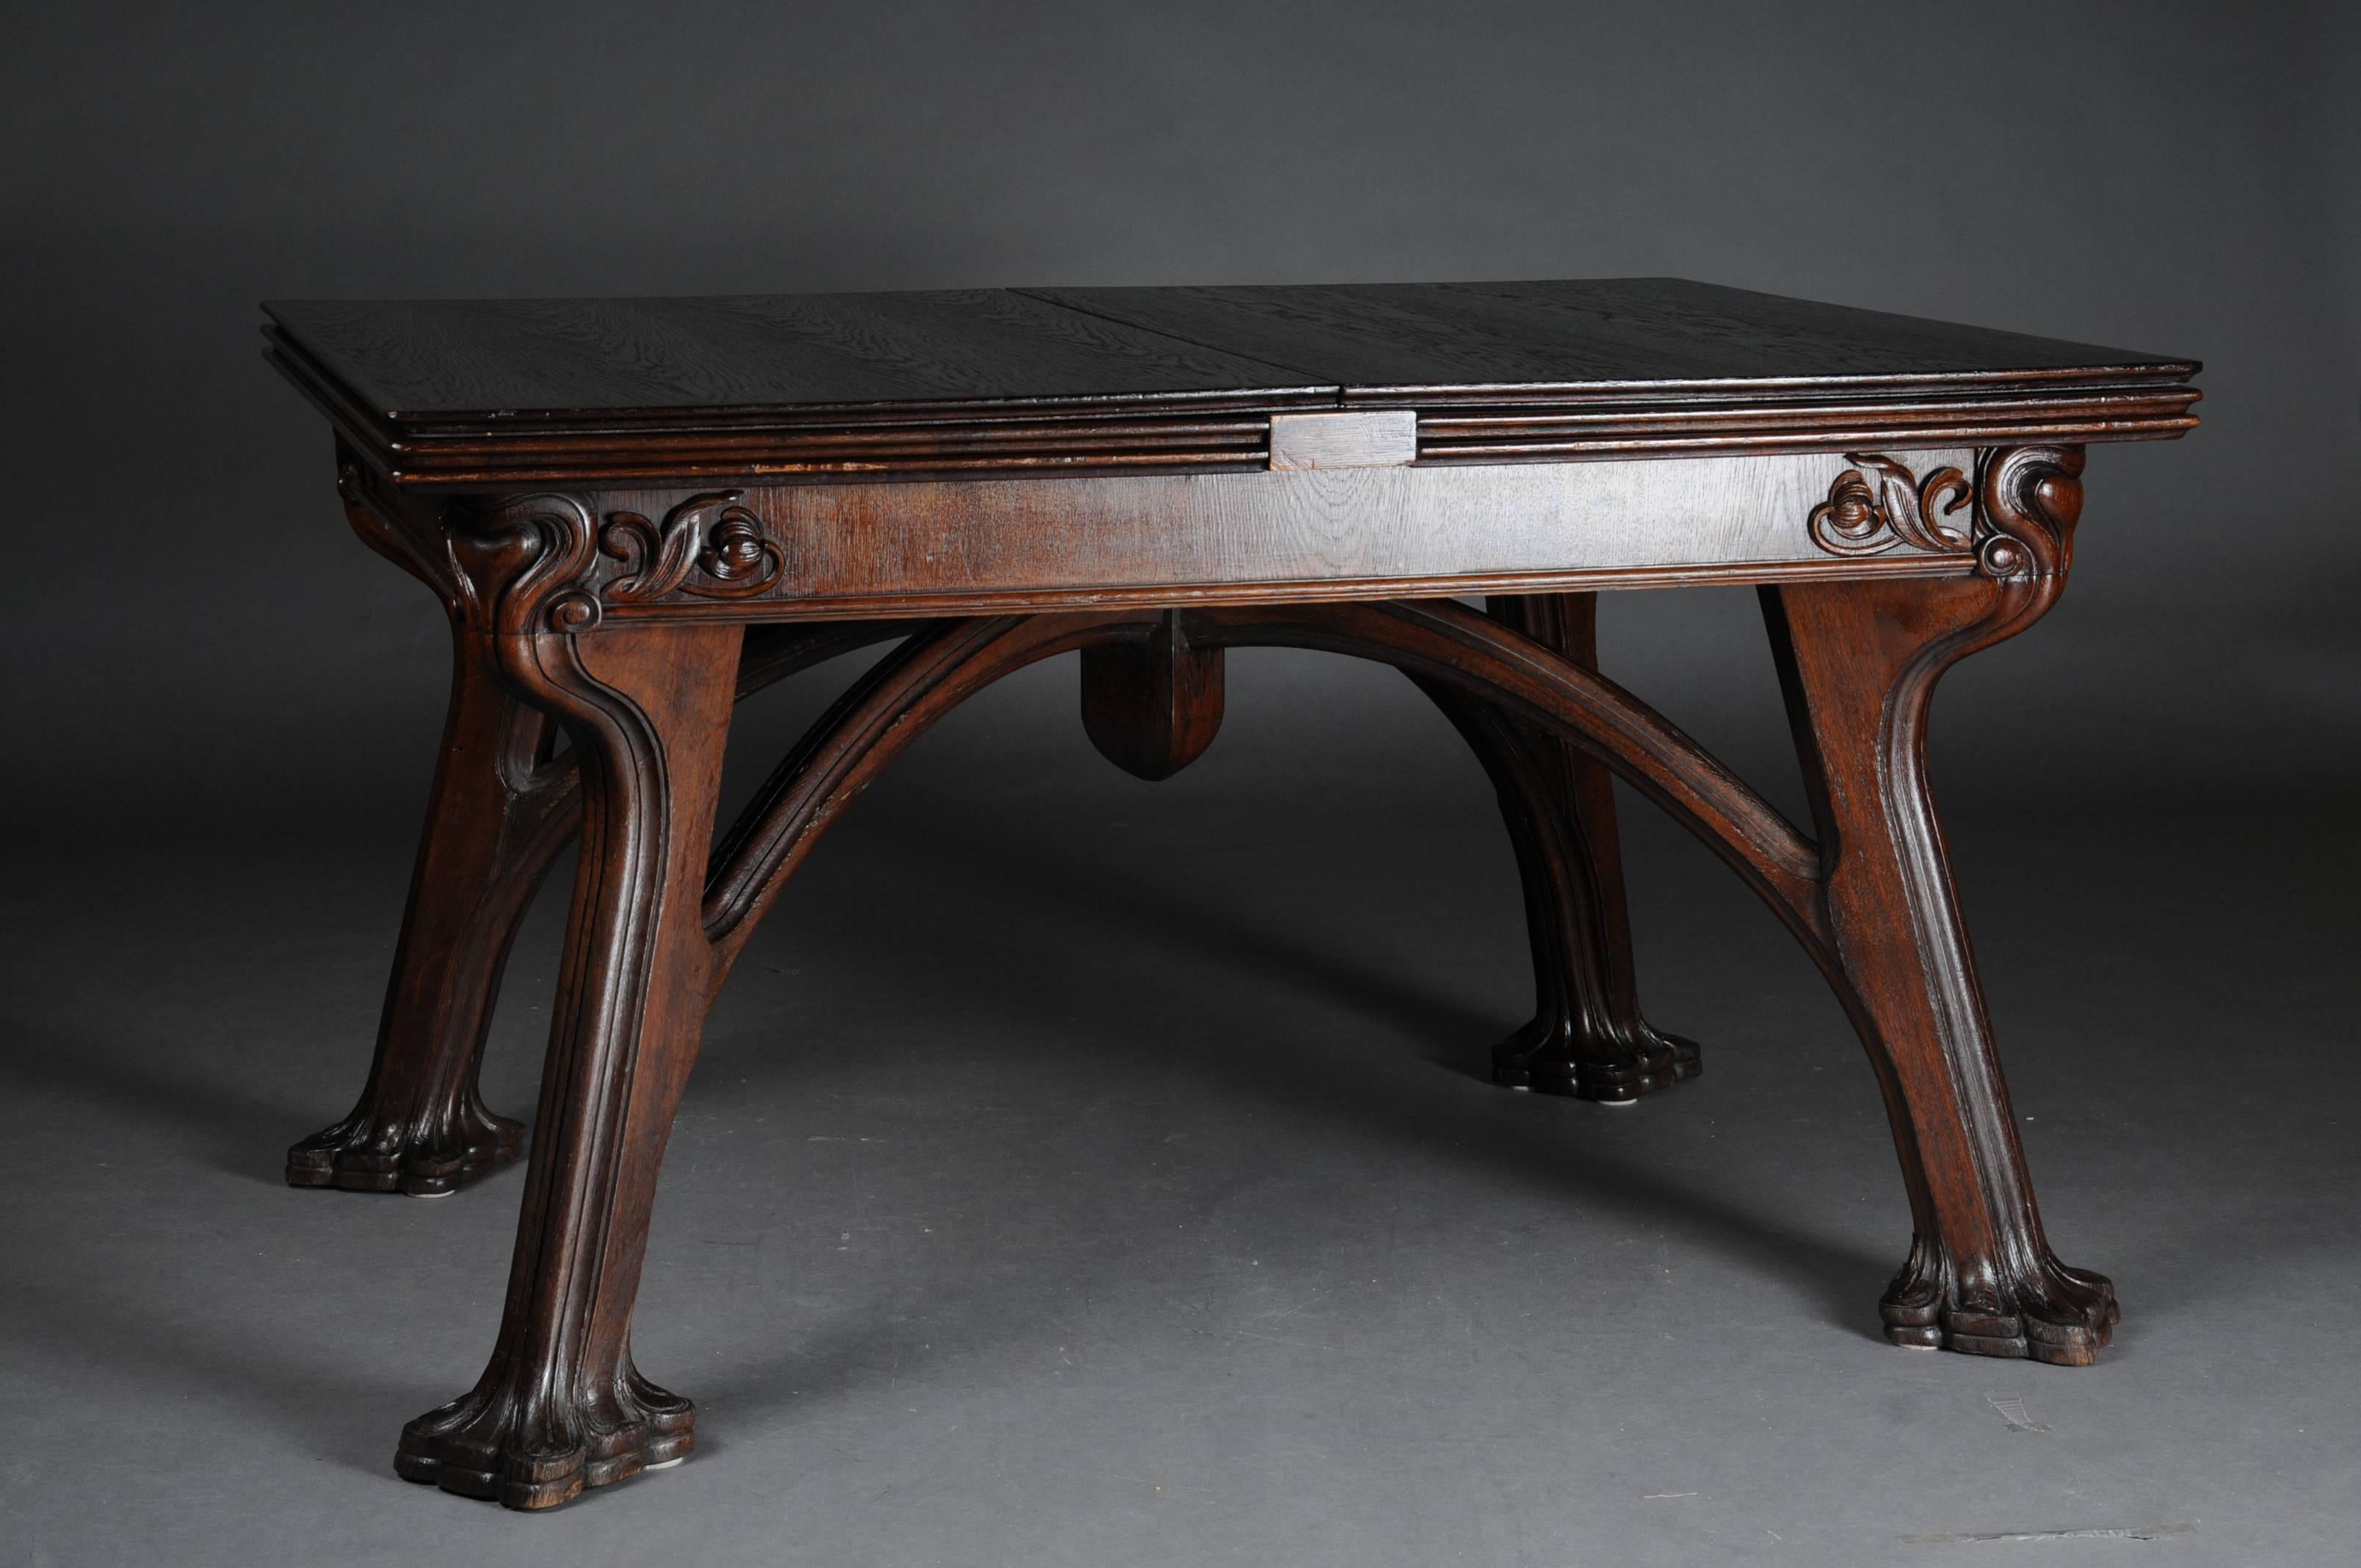 Hand-Carved Unique Extendable Table, Art Nouveau, Eugene Gaillard, Solid Oak